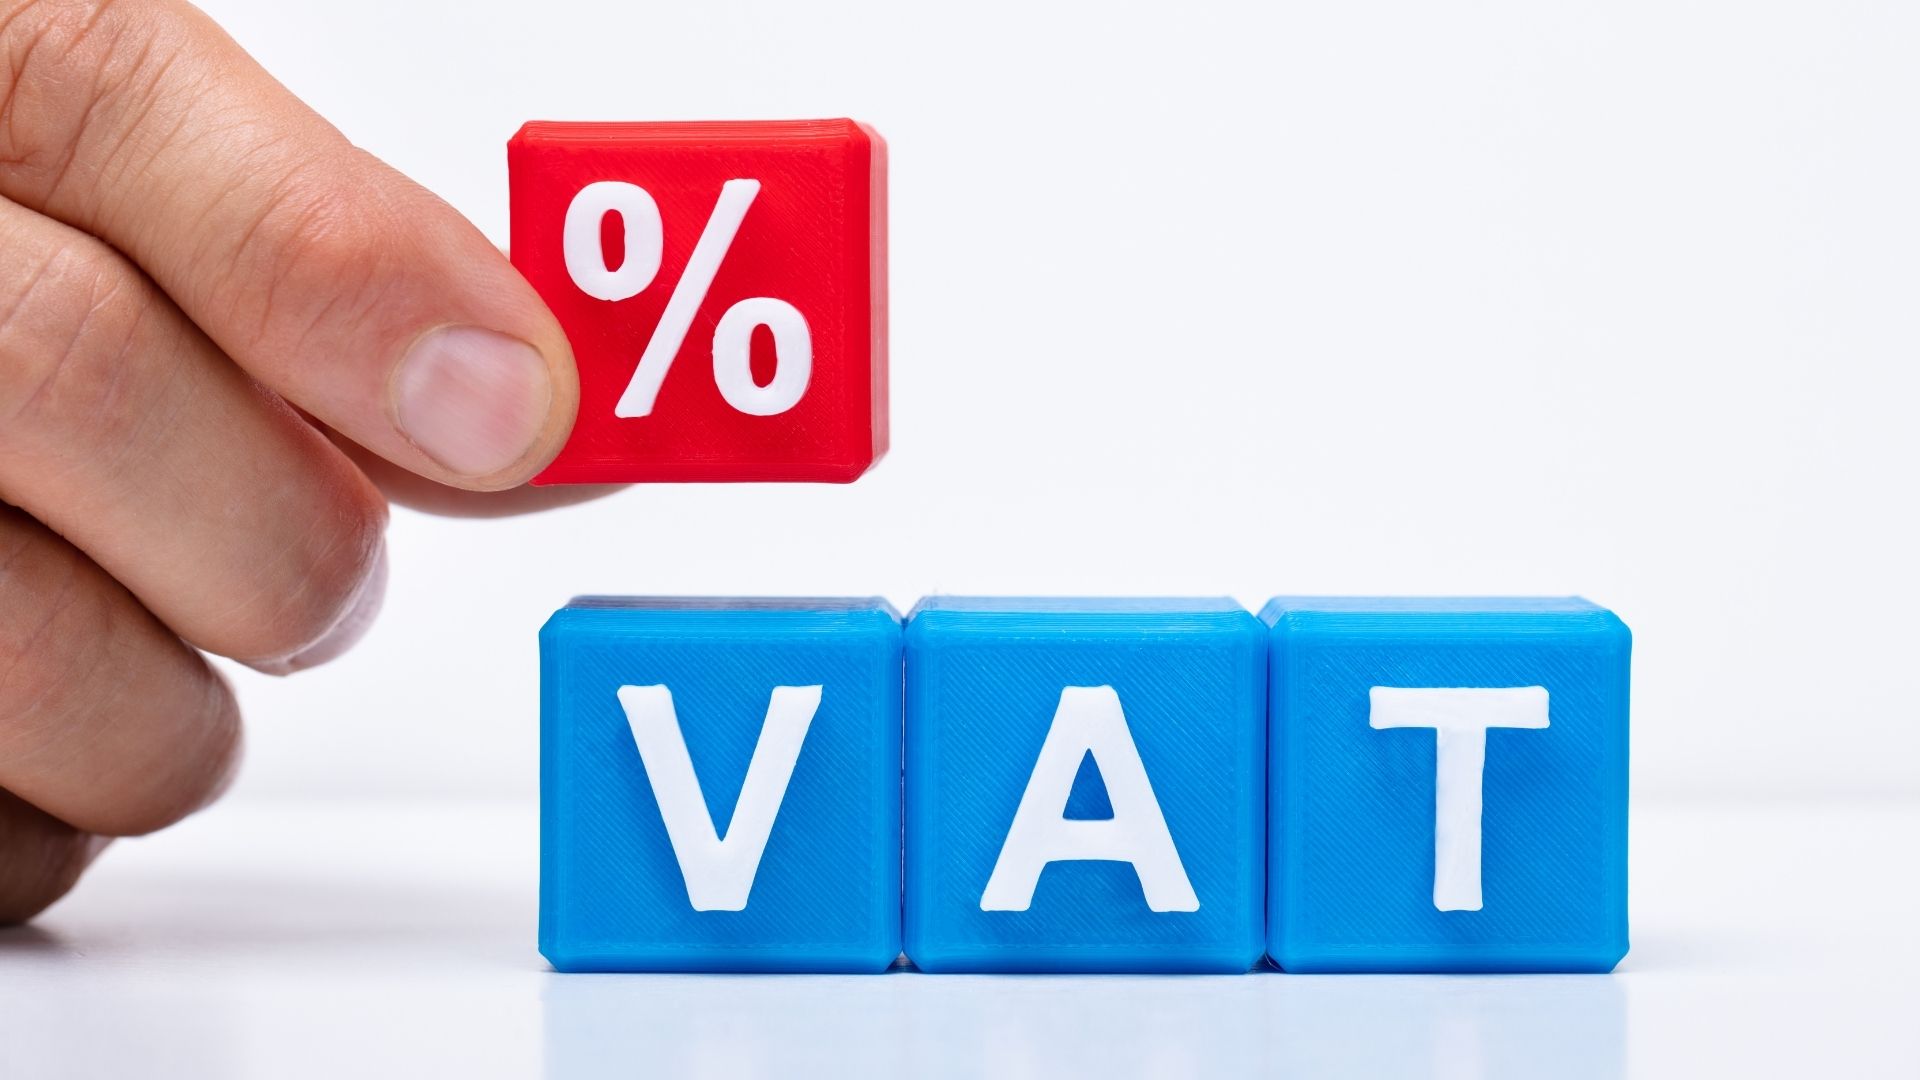 Phó Thủ tướng giao Bộ Tài chính sớm có hướng dẫn về giảm thuế VAT - Ảnh 1.